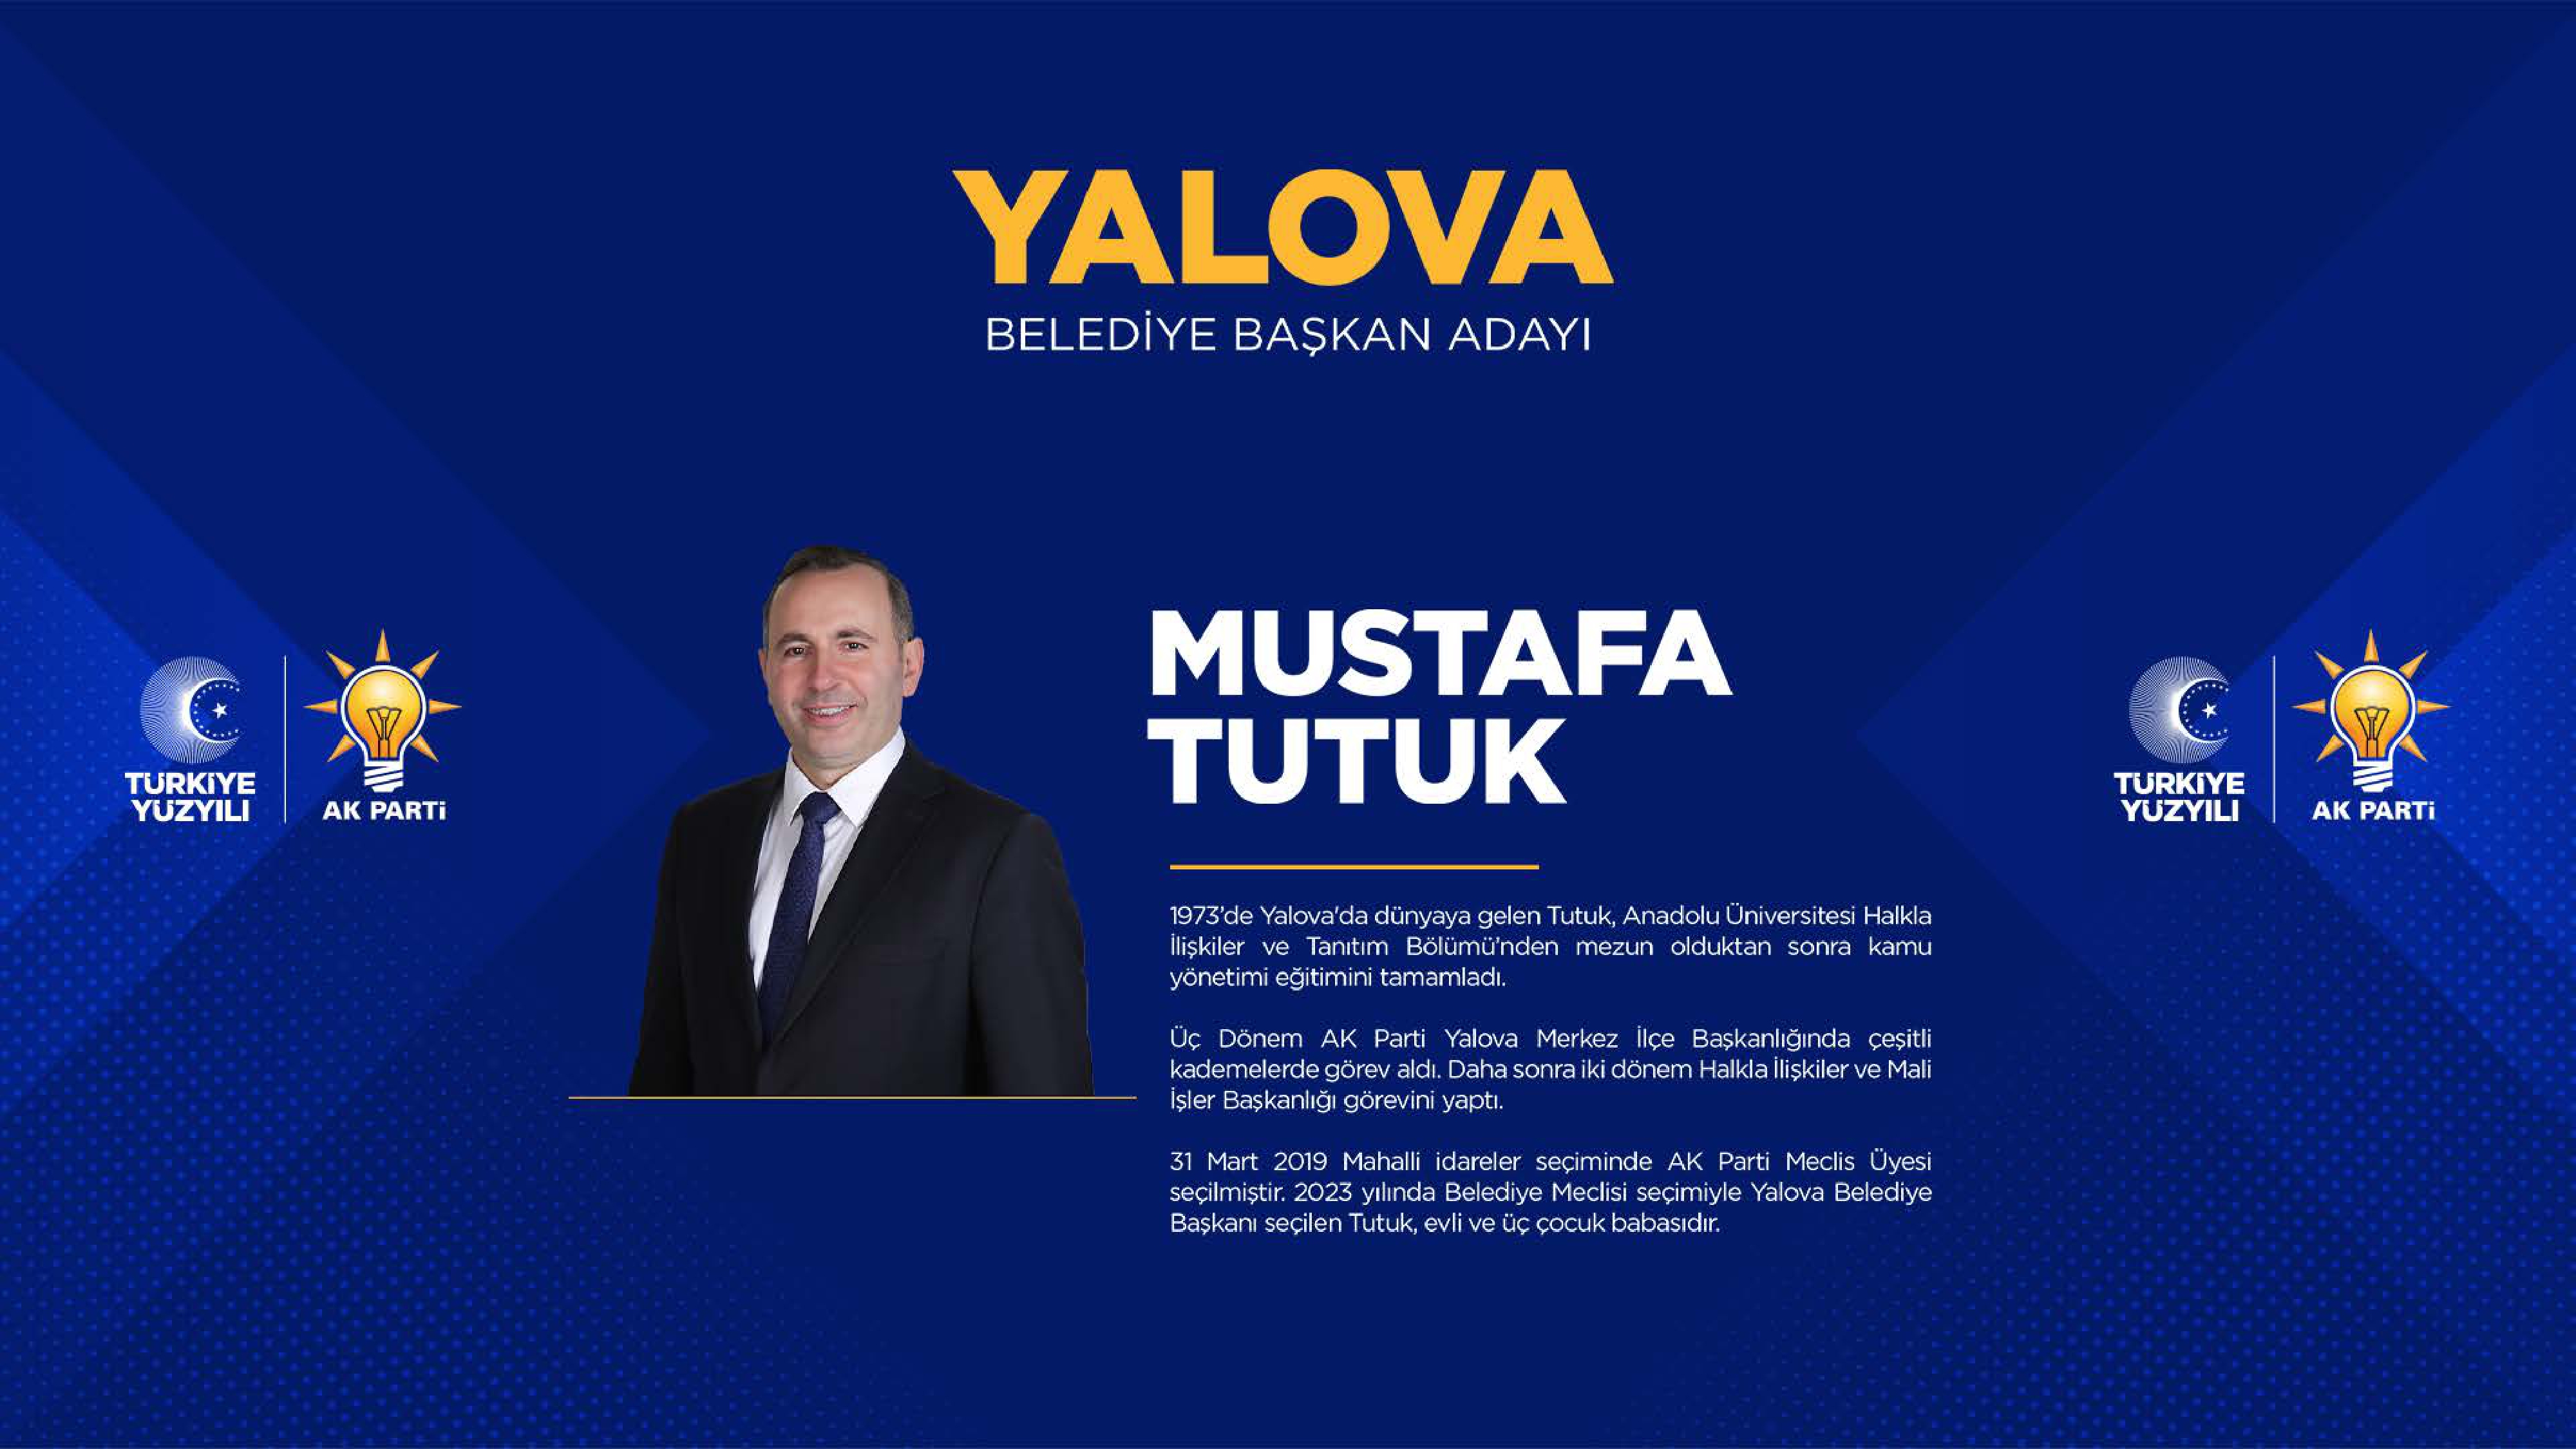 <p>Yalova Belediye Başkan adayı Mustafa Tutuk</p>